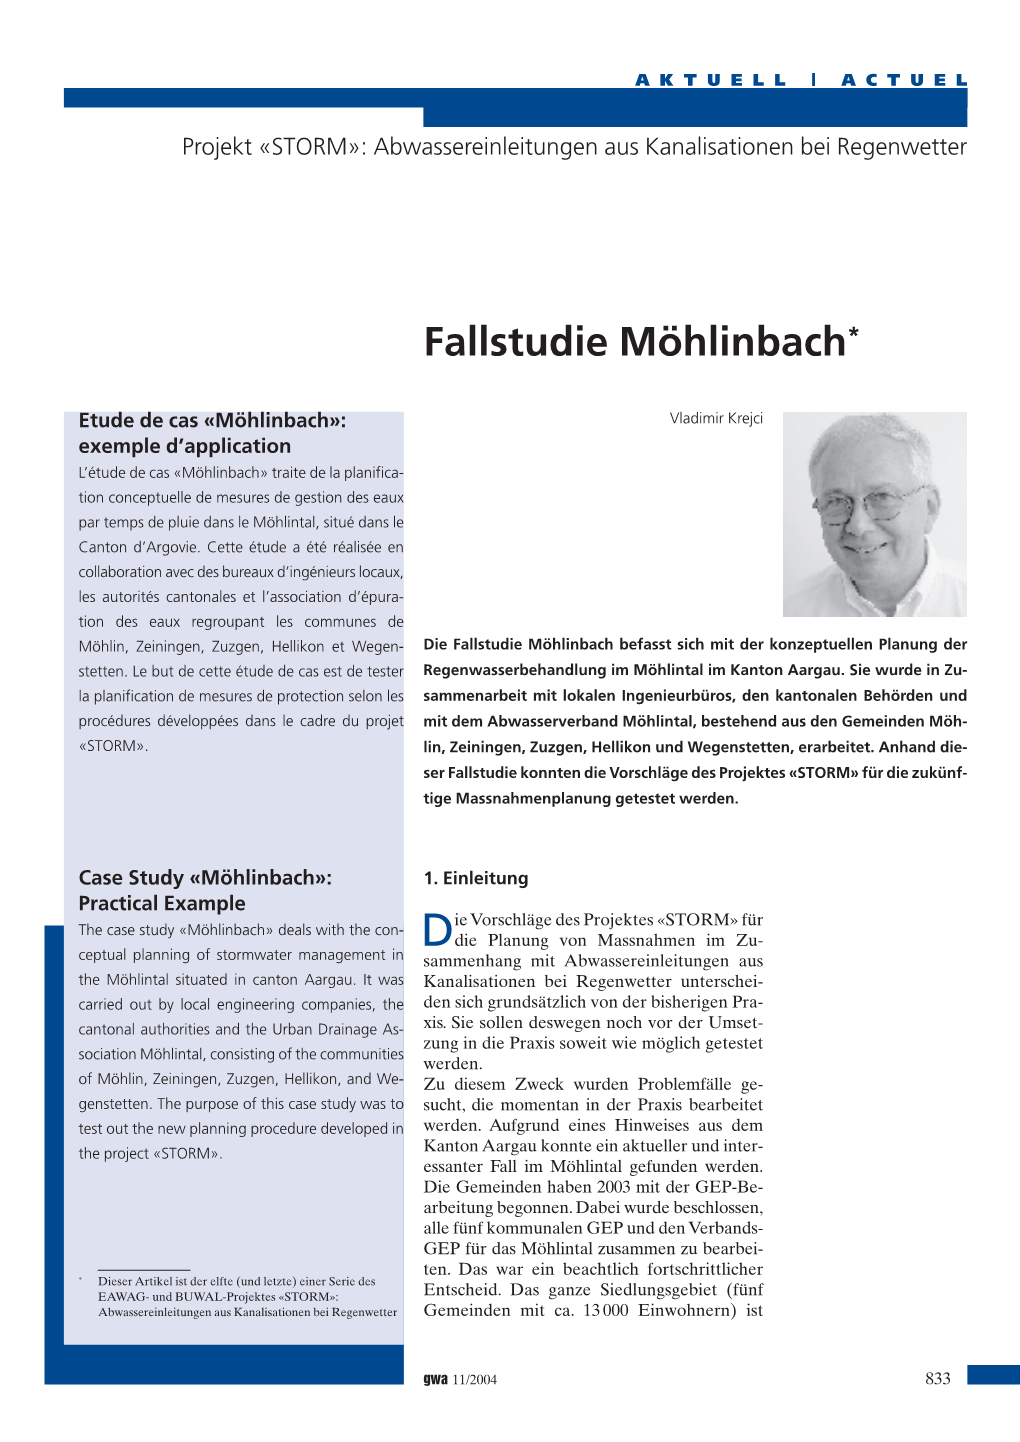 Krejci, V. "Fallstudie Möhlinbach"